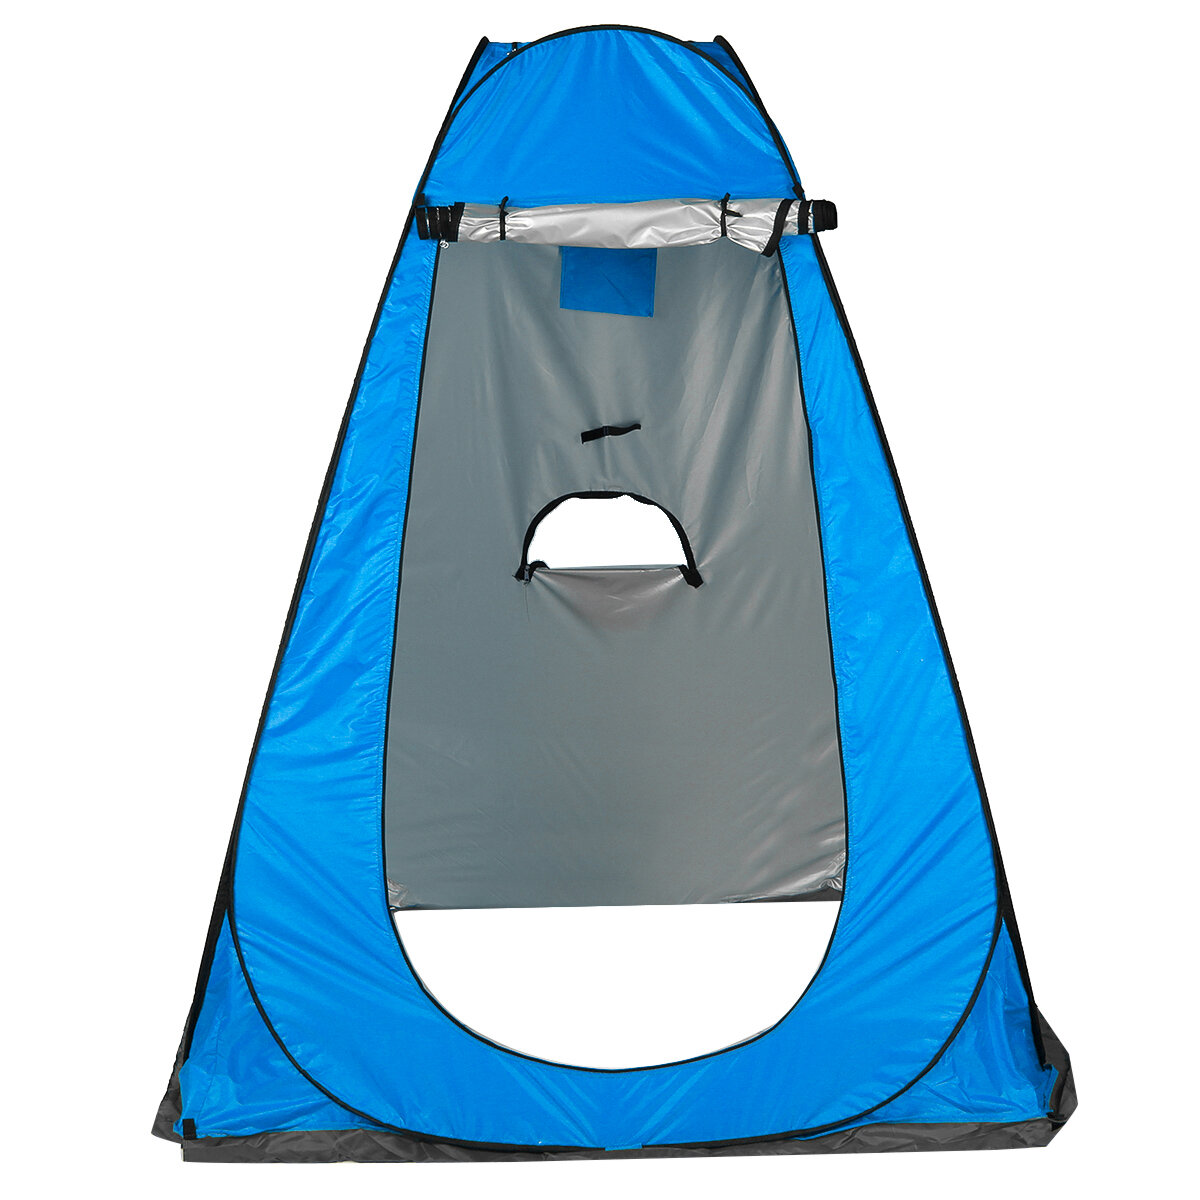 Faltbares tragbares Campingzelt mit 3 Fenstern, UV-Schutz und wasserdichten Schutzhütten zum Duschen und Baden in privater Atmosphäre